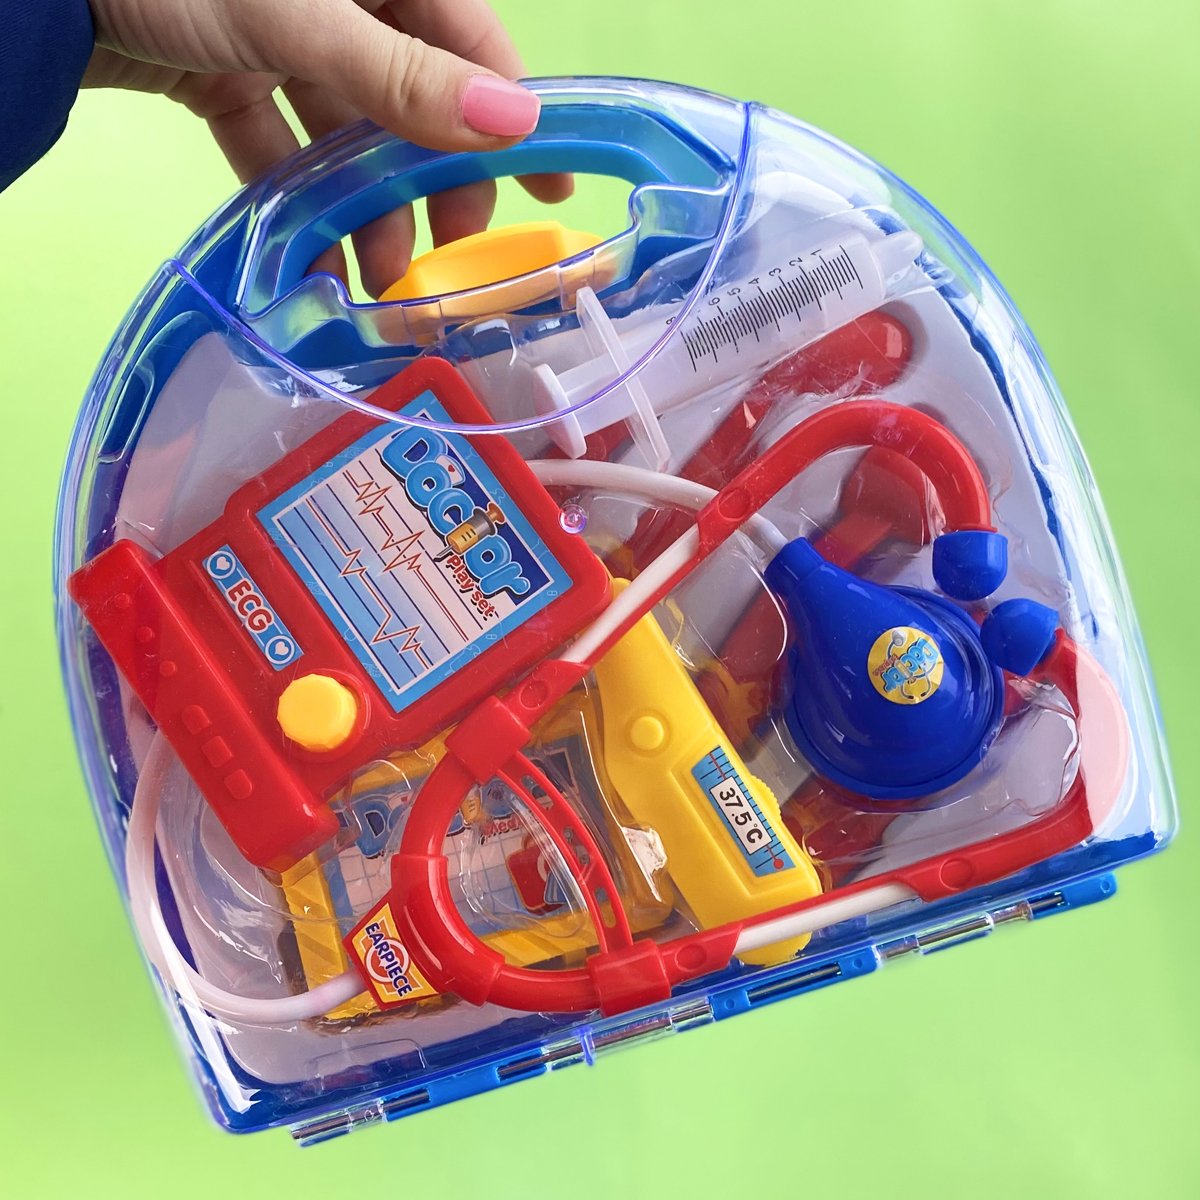 Kit Médico Brinquedo Infantil com Maleta Doutor Fenix 10 Peças Azul e Vermelho - 6